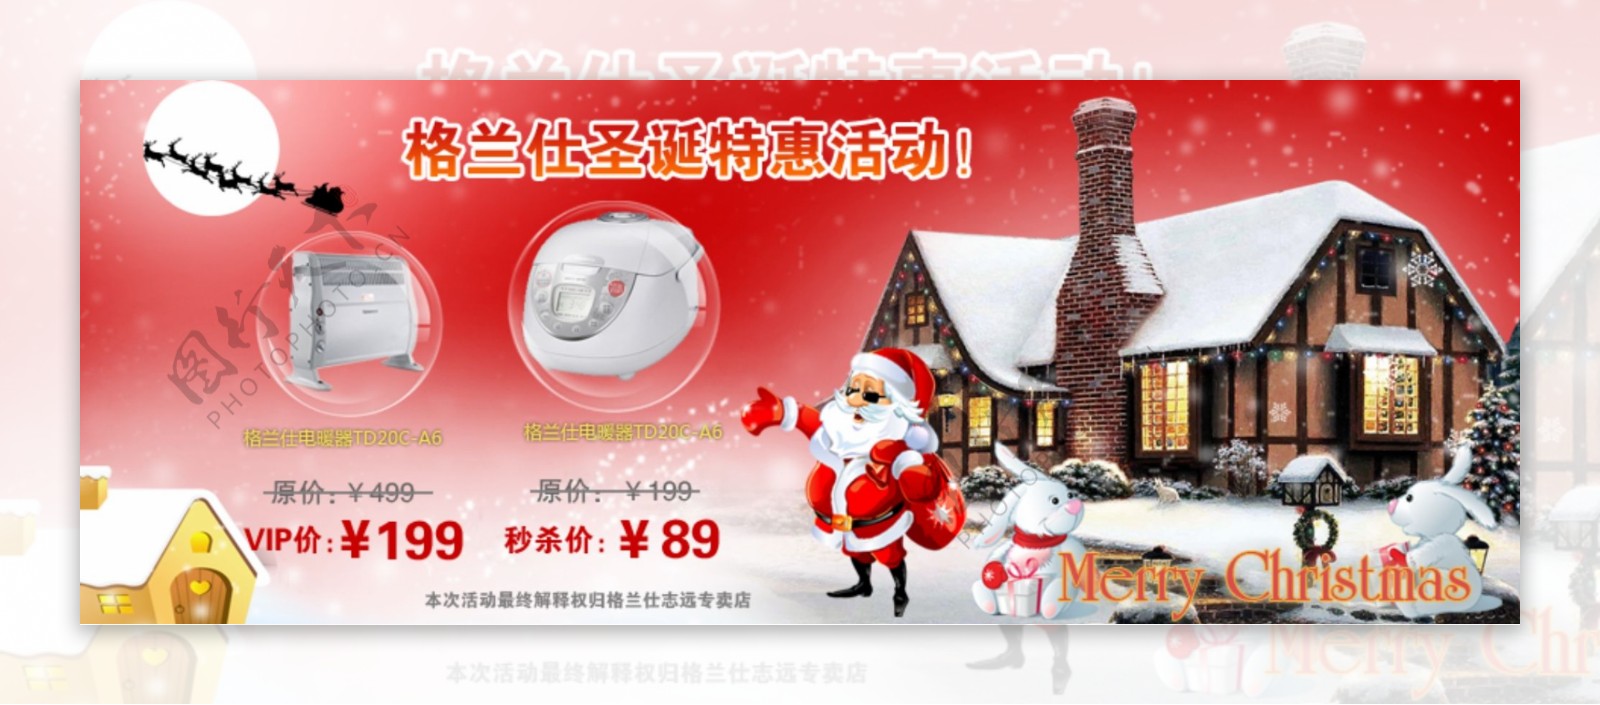 圣诞节网页促销活动广告图片